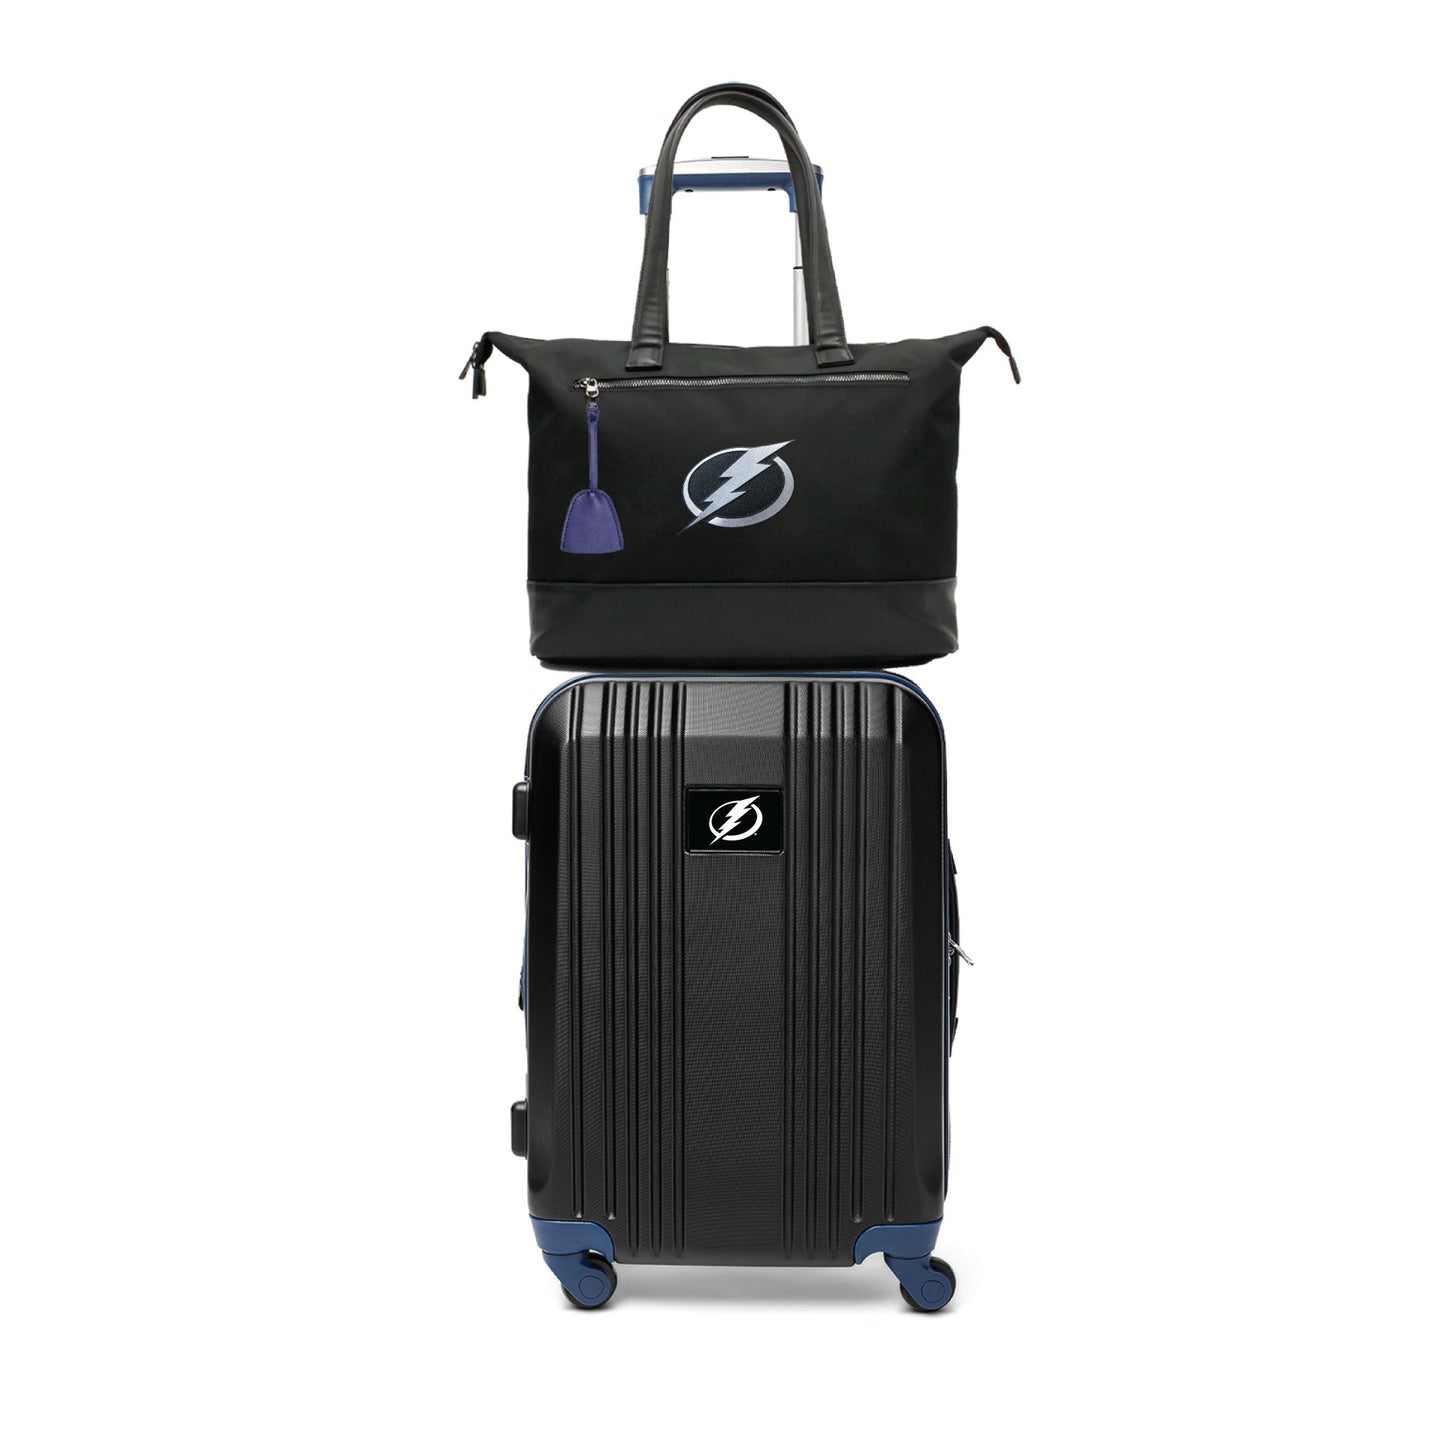 Tampa Bay Lightning Premium Laptop Tote Bag and Luggage Set